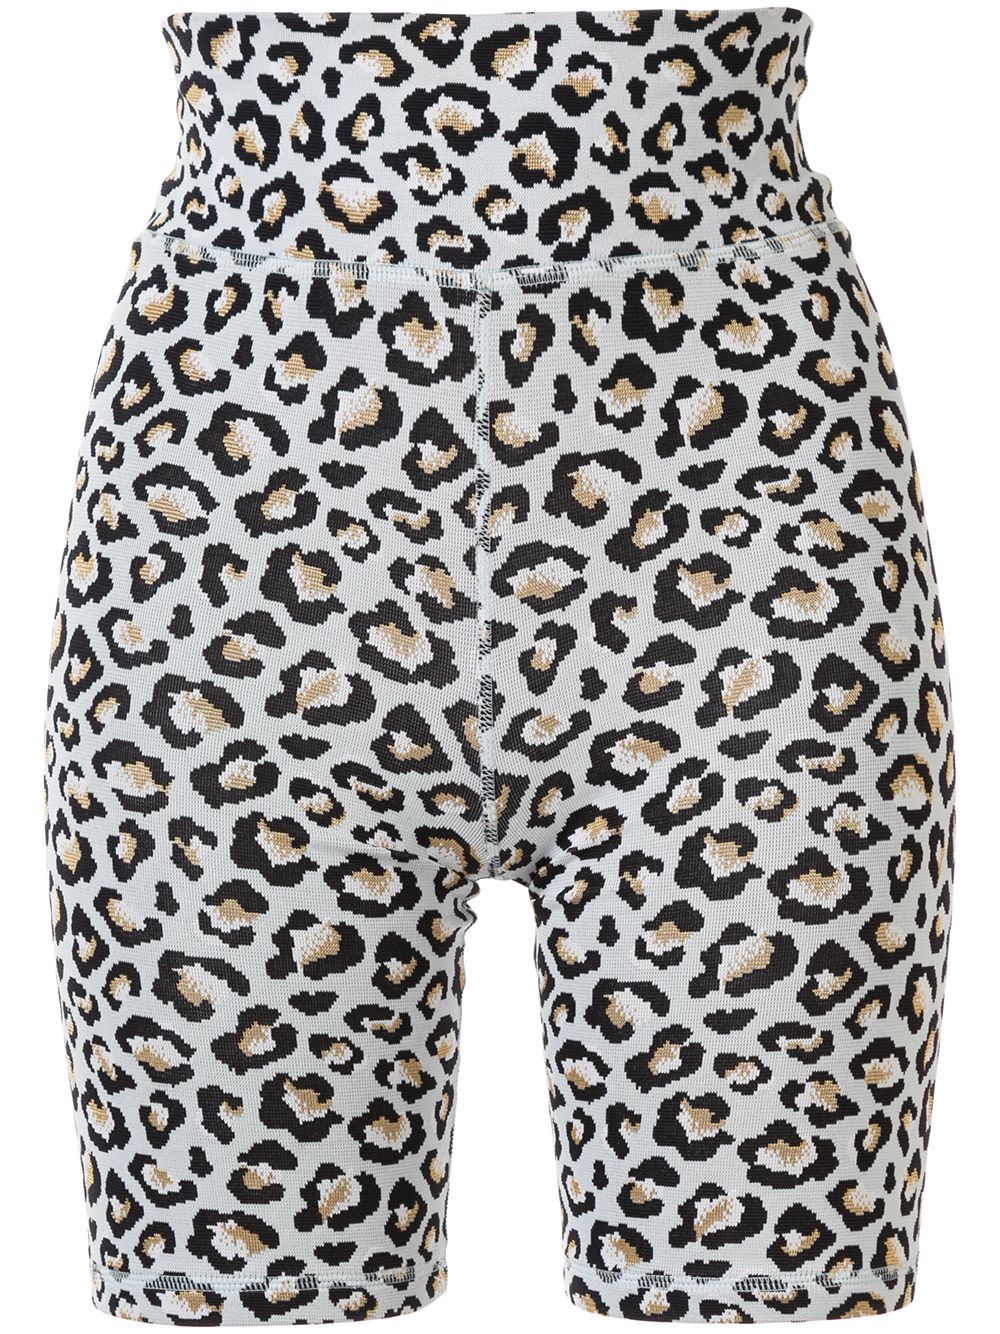 фото The upside облегающие шорты с леопардовым принтом